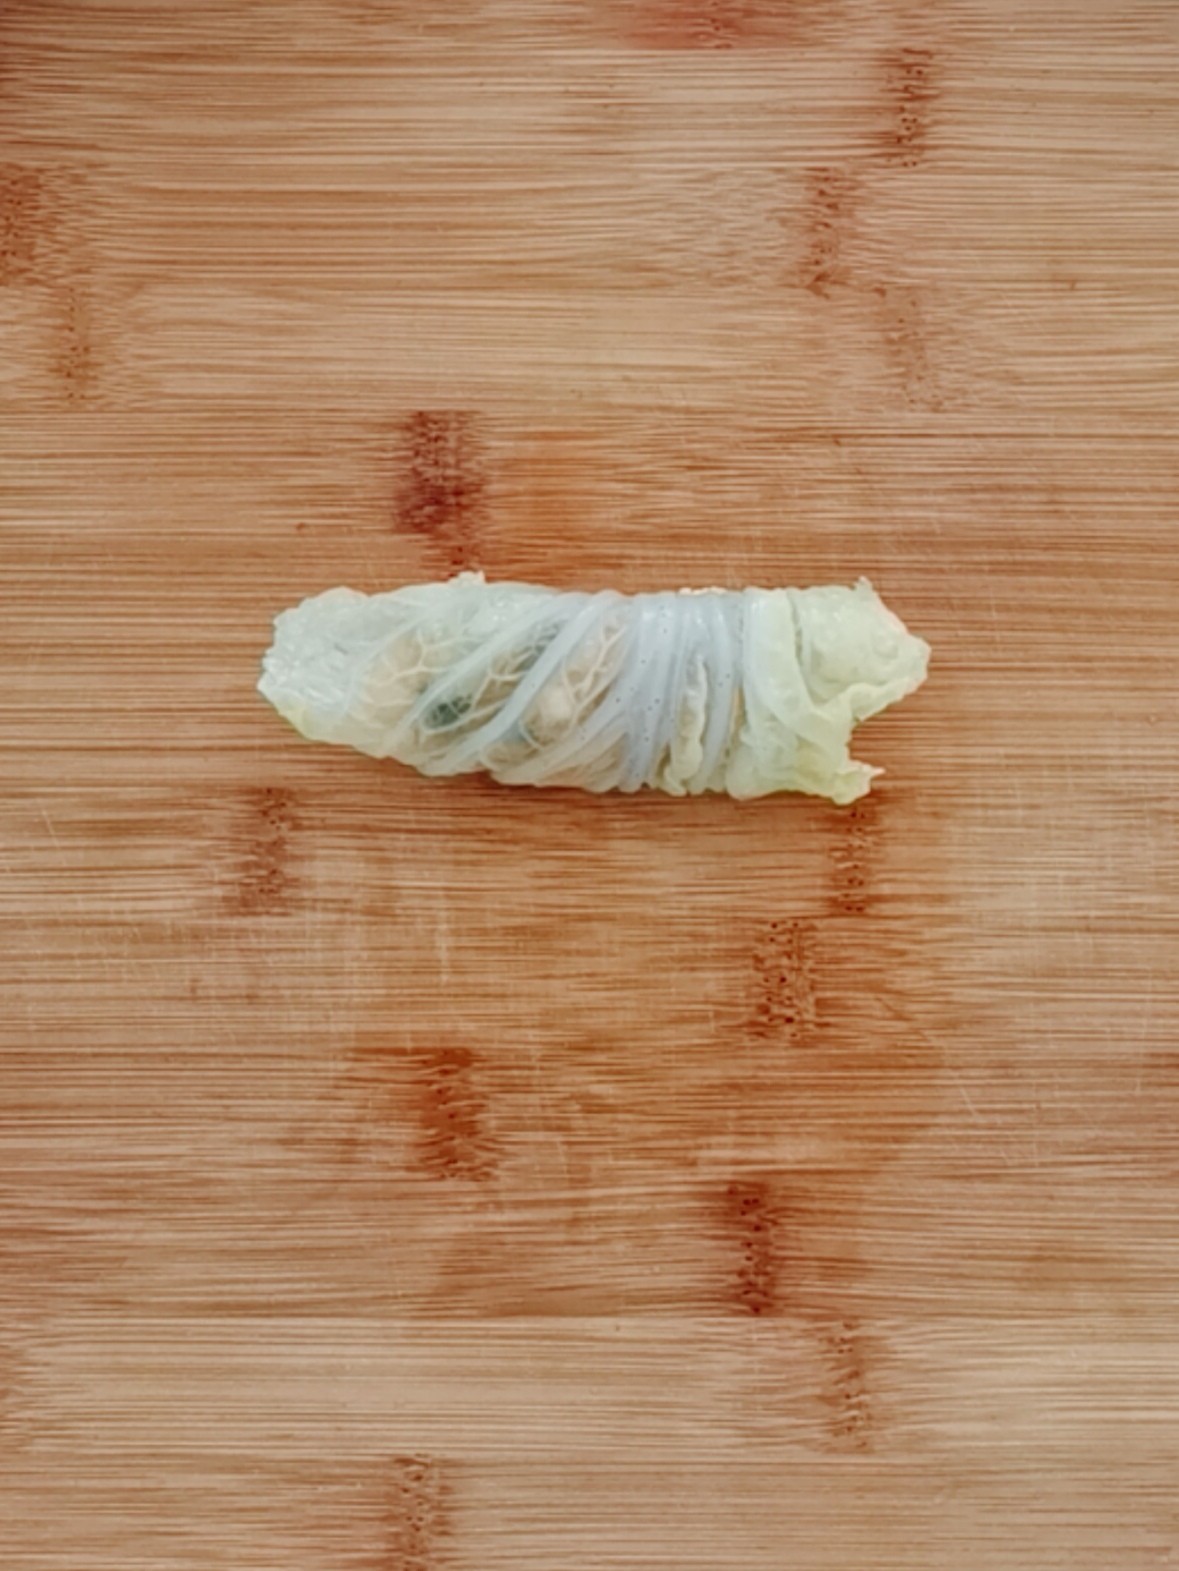 Cabbage Chicken Wraps recipe